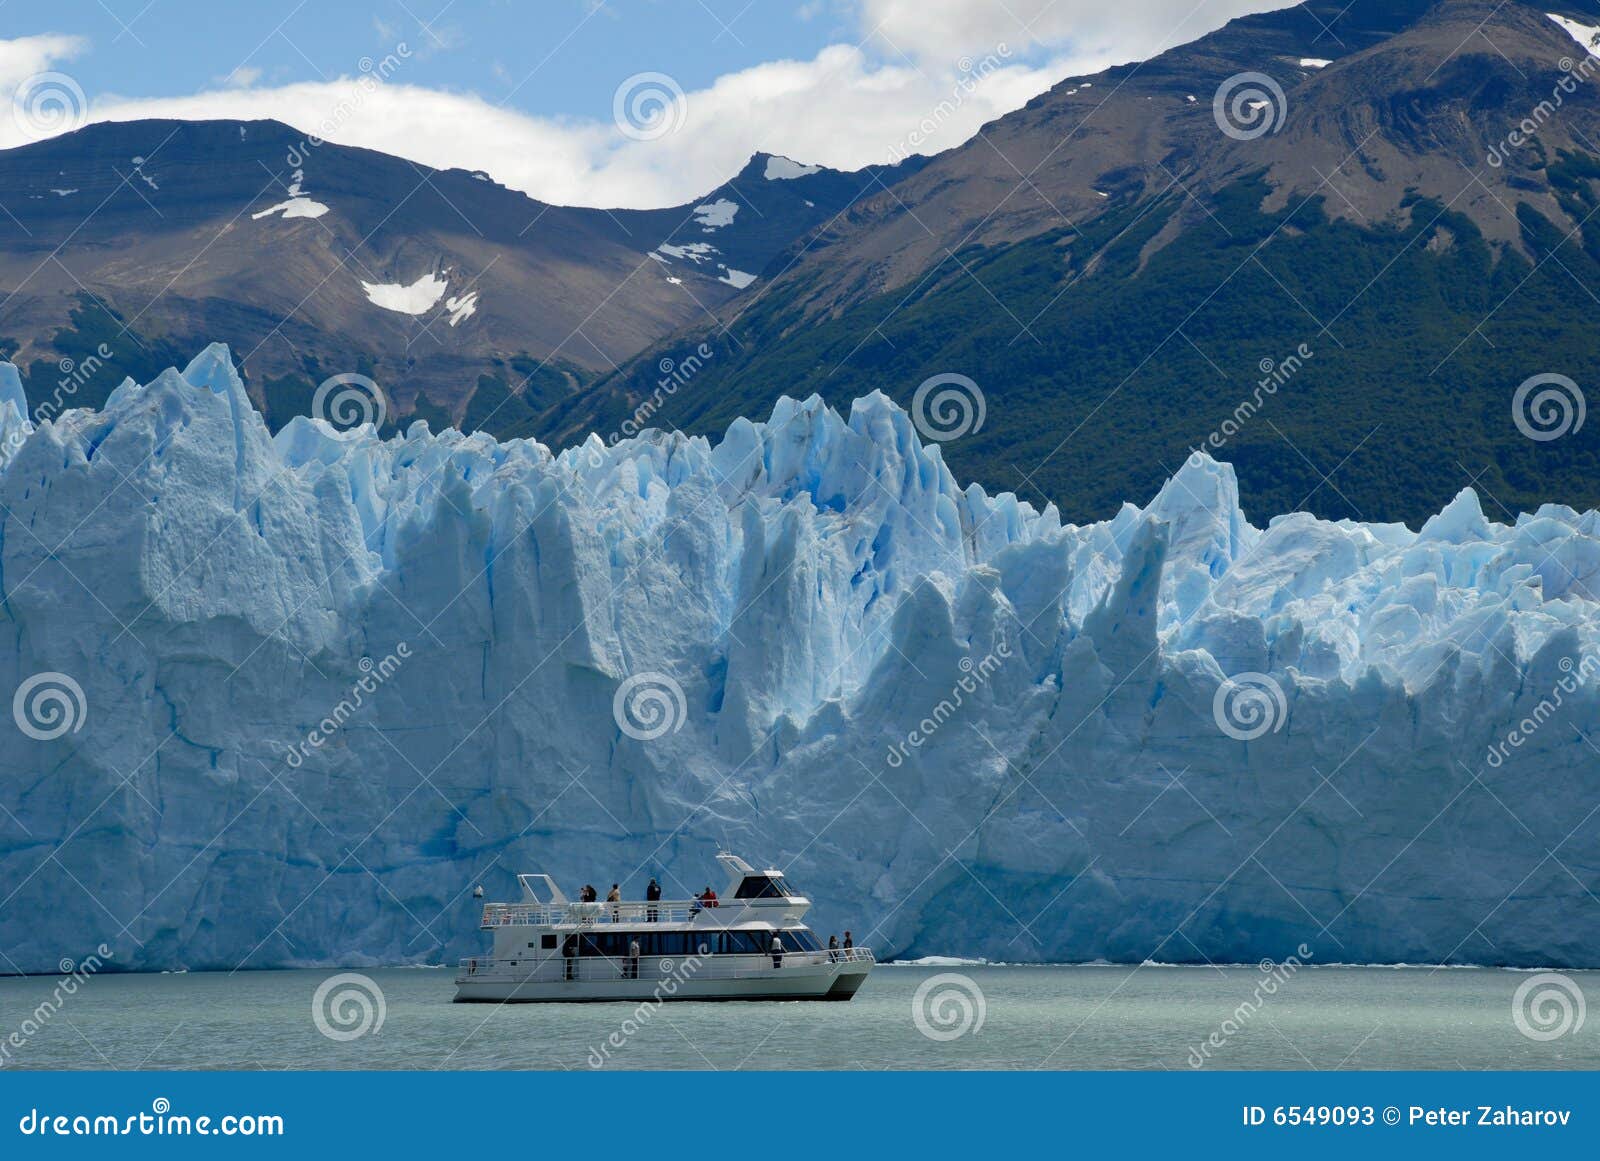 excursion ship near the perito moreno glacier